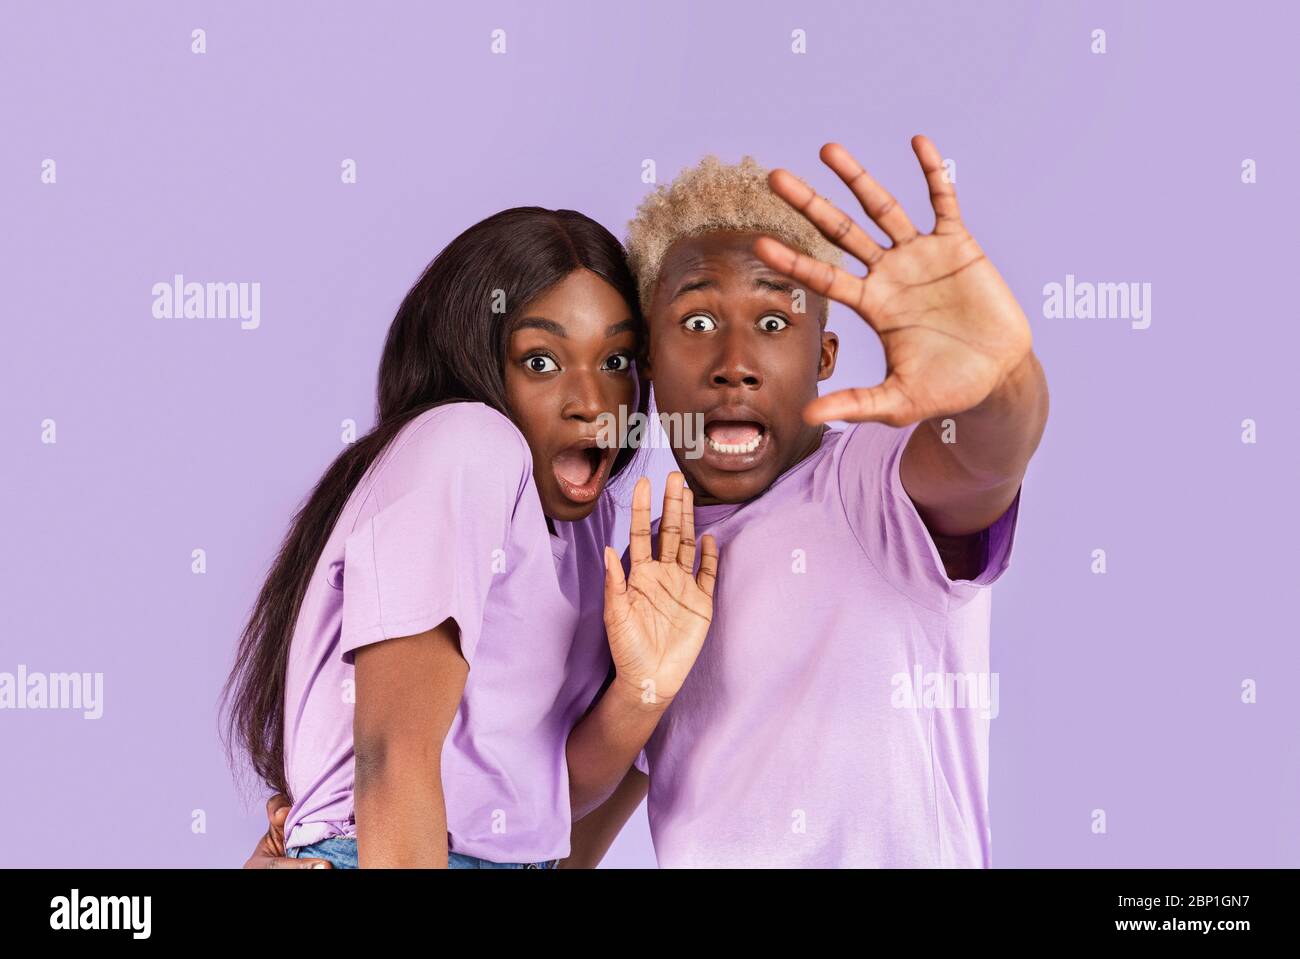 Portrait d'un couple noir avec des visages effrayés ou choqués sur fond lilas Banque D'Images